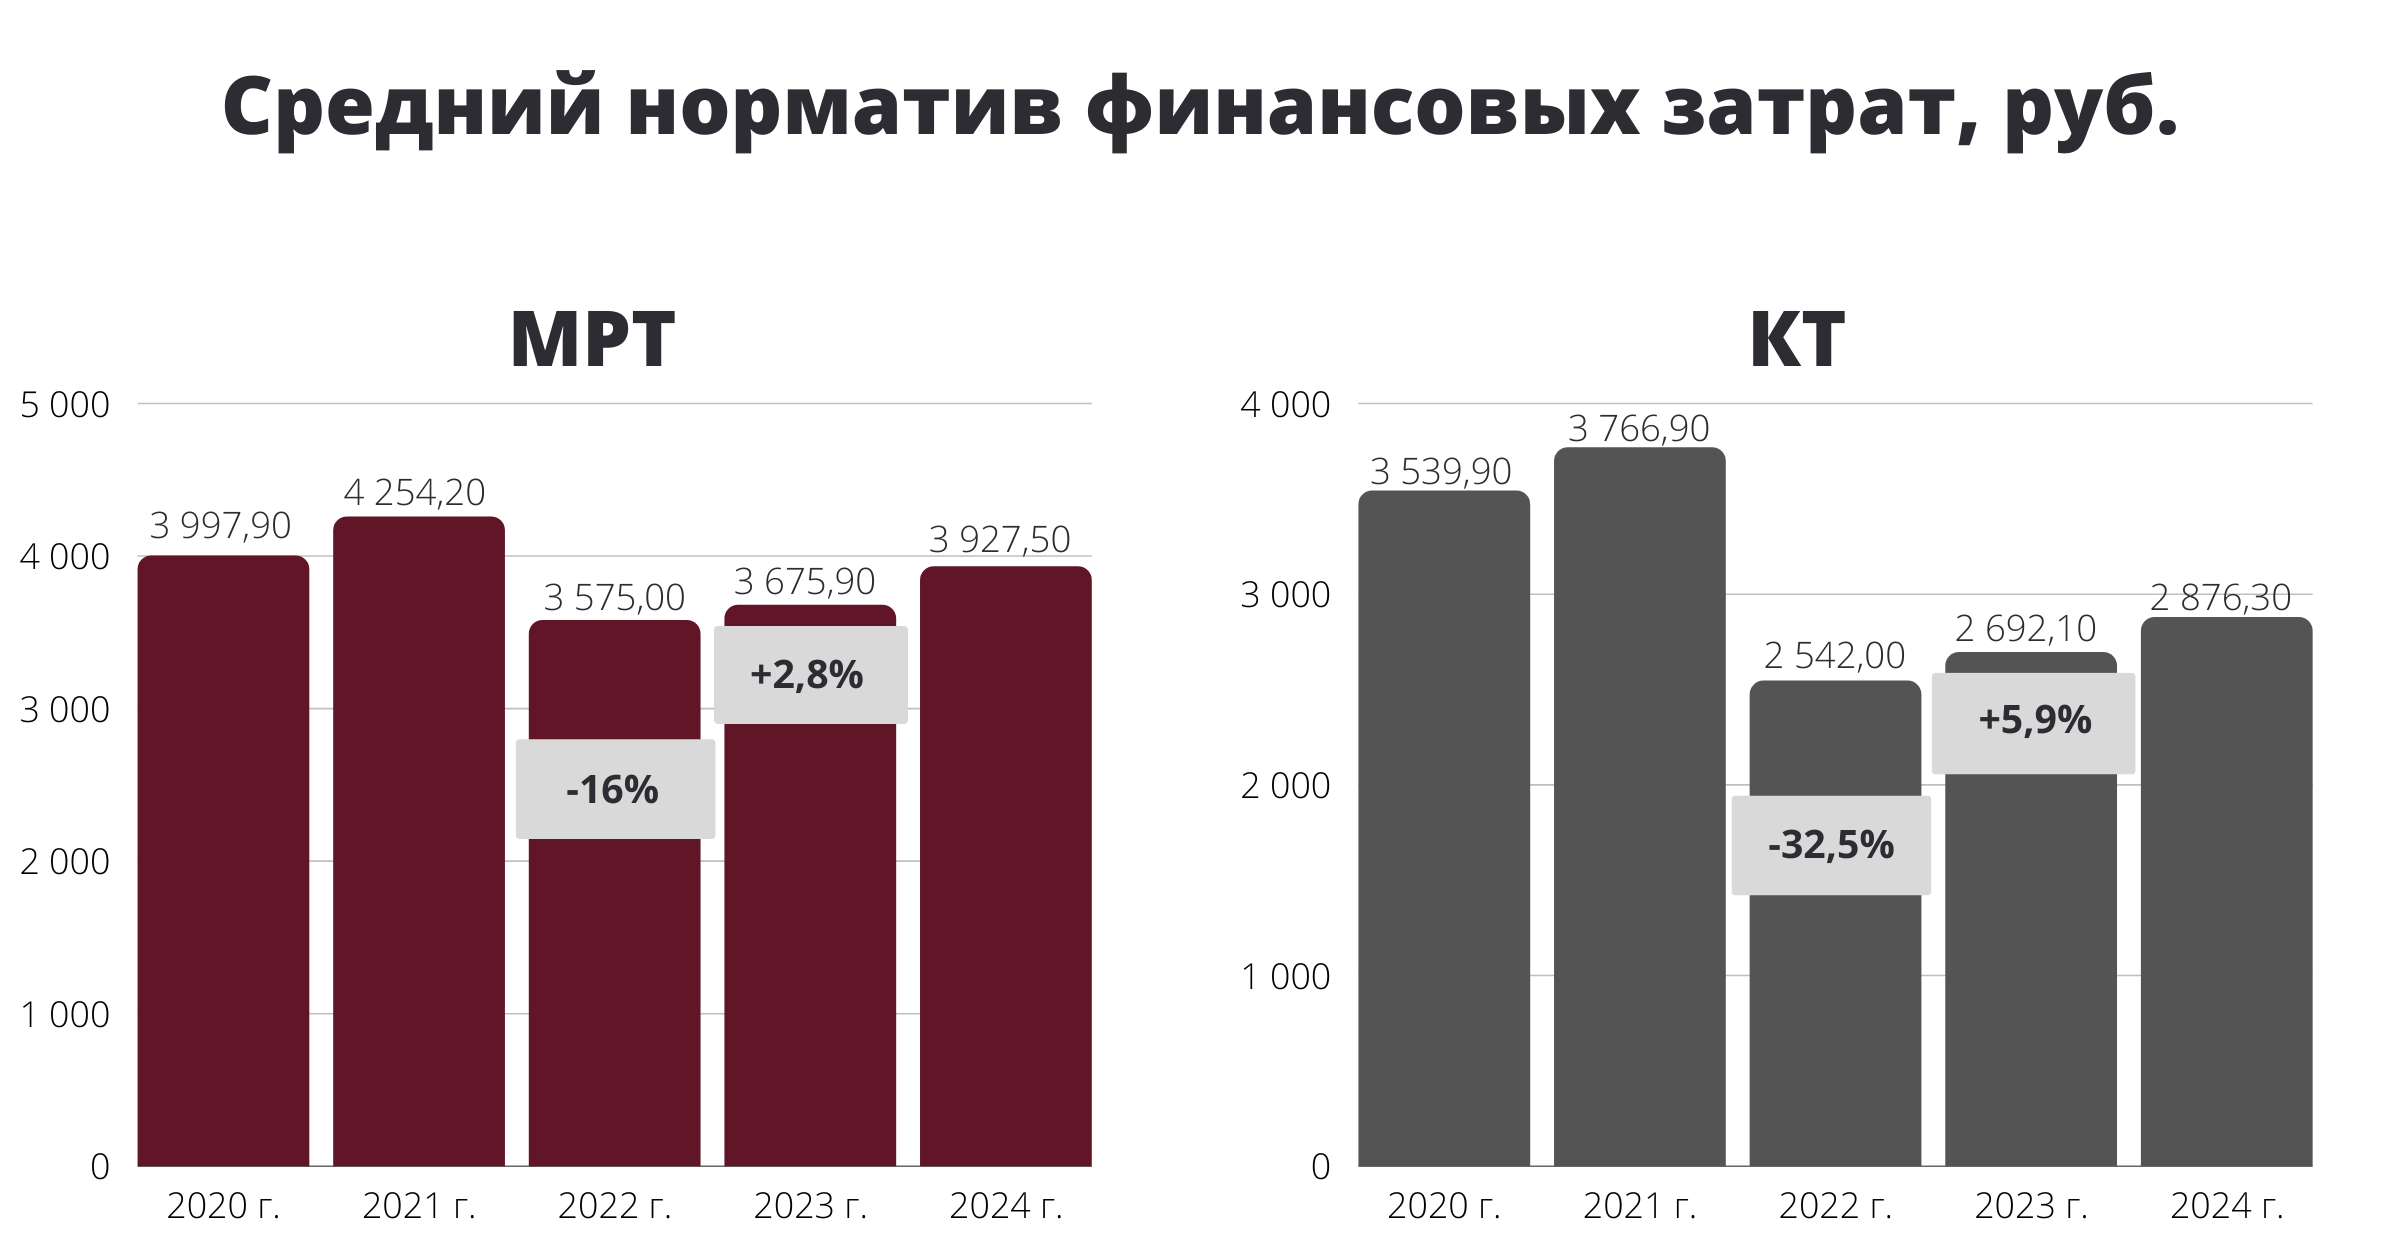 Тарифы на контрасте: как в России оплачиваются КТ и МРТ